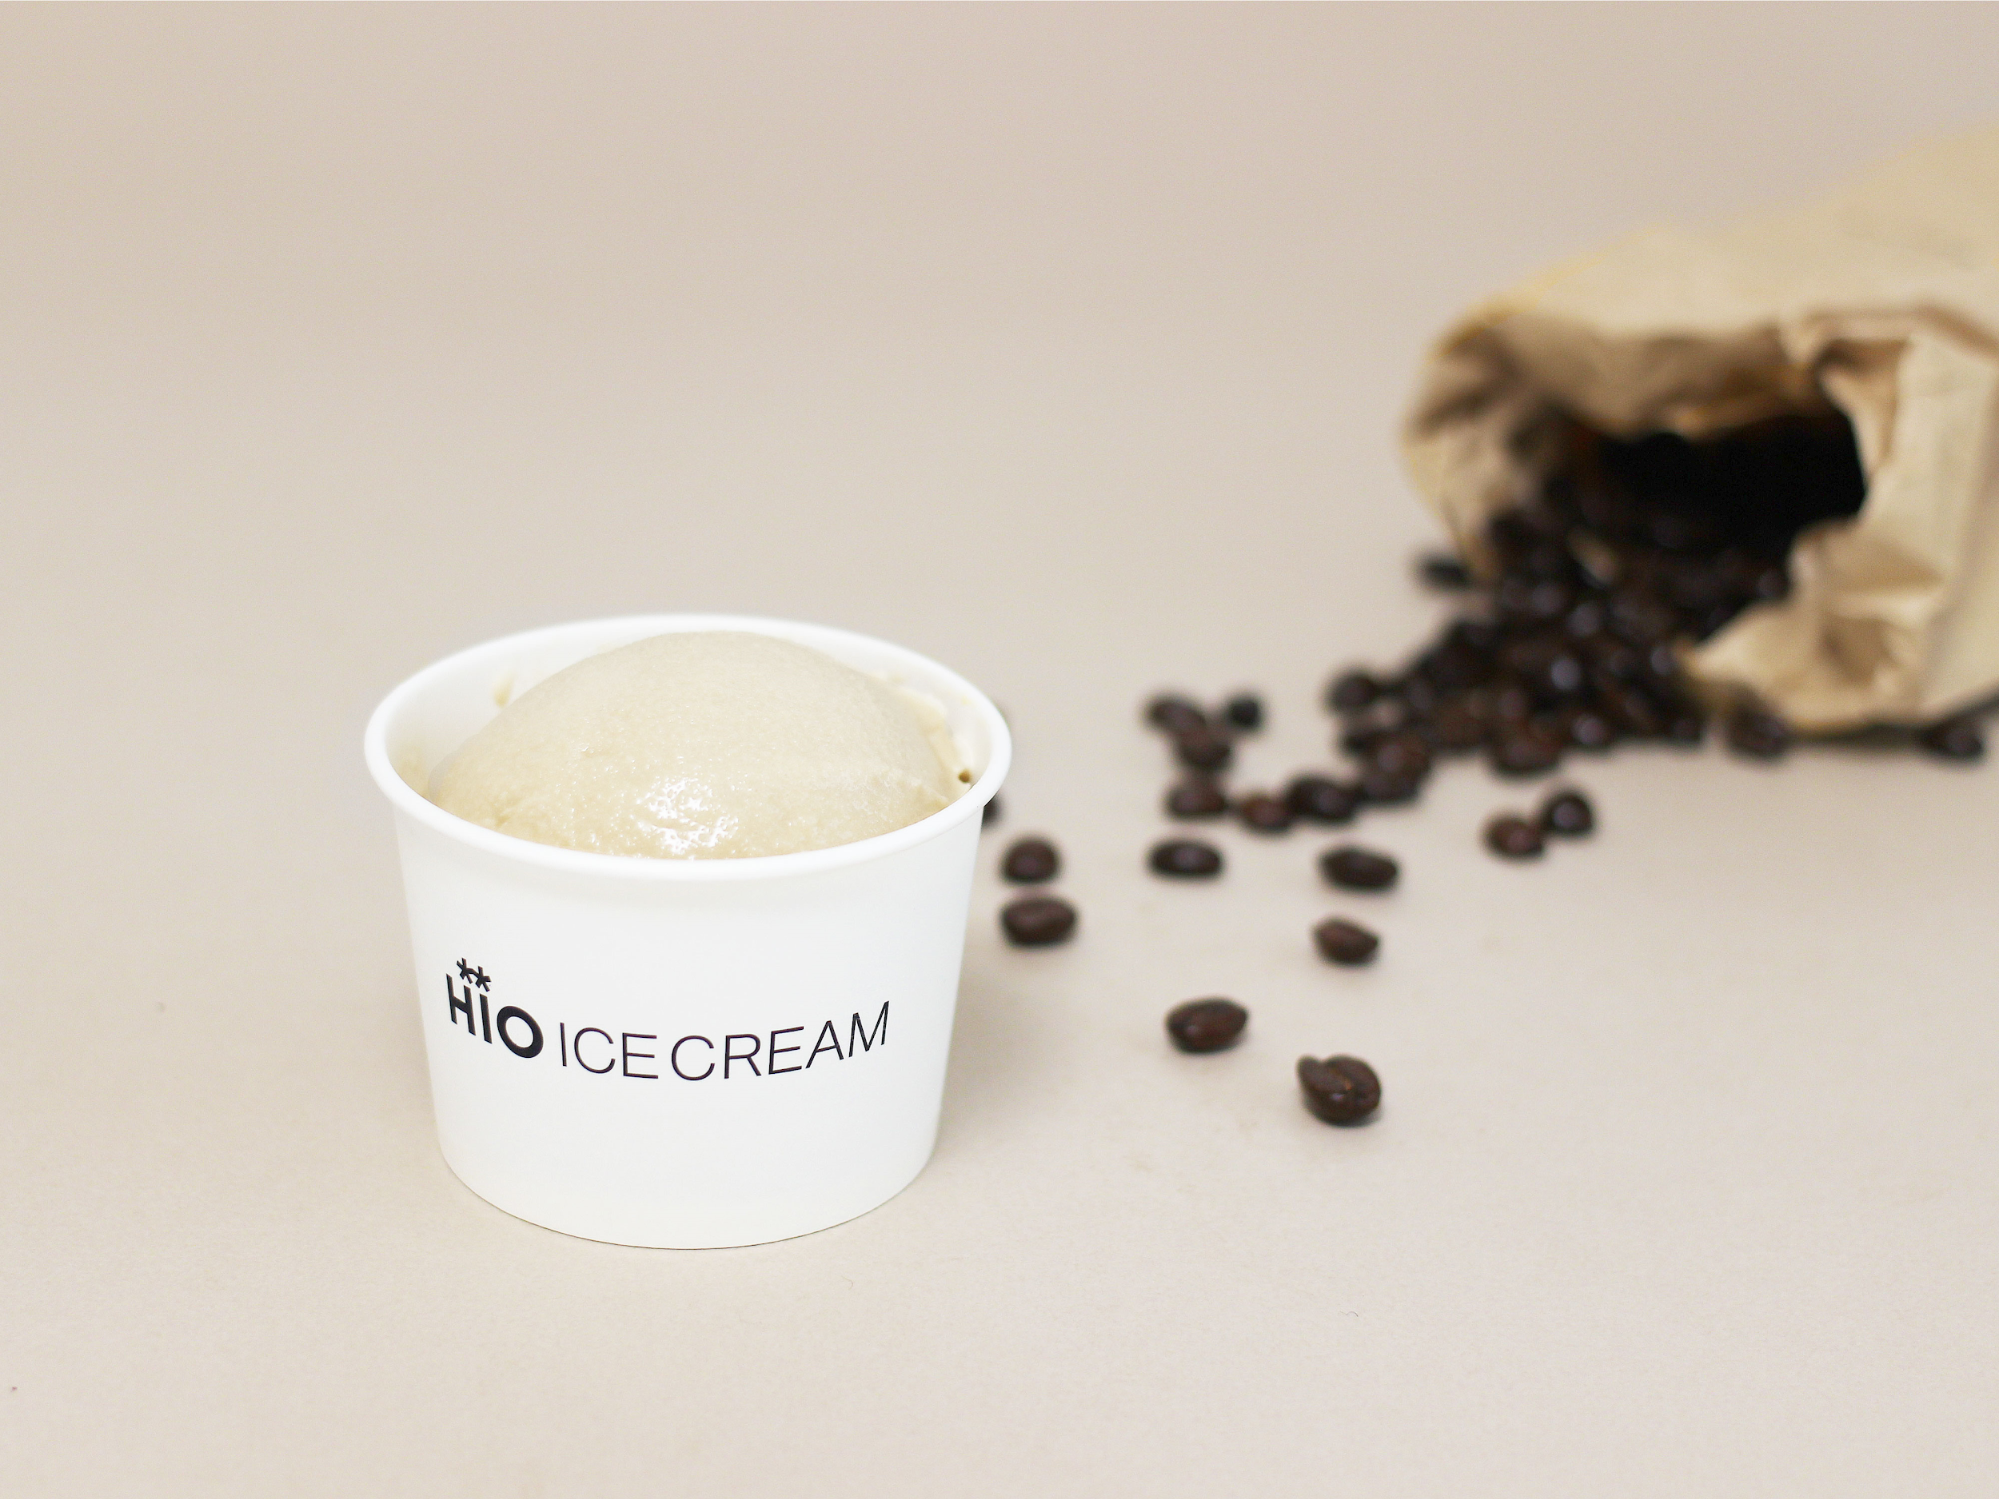 Hio Ice Creamとブルーボトルコーヒーのコラボレーション第3弾 ヘイズ バレー エスプレッソ を使ったコーヒー アイスクリームを共同開発 販売 株式会社hioliのプレスリリース